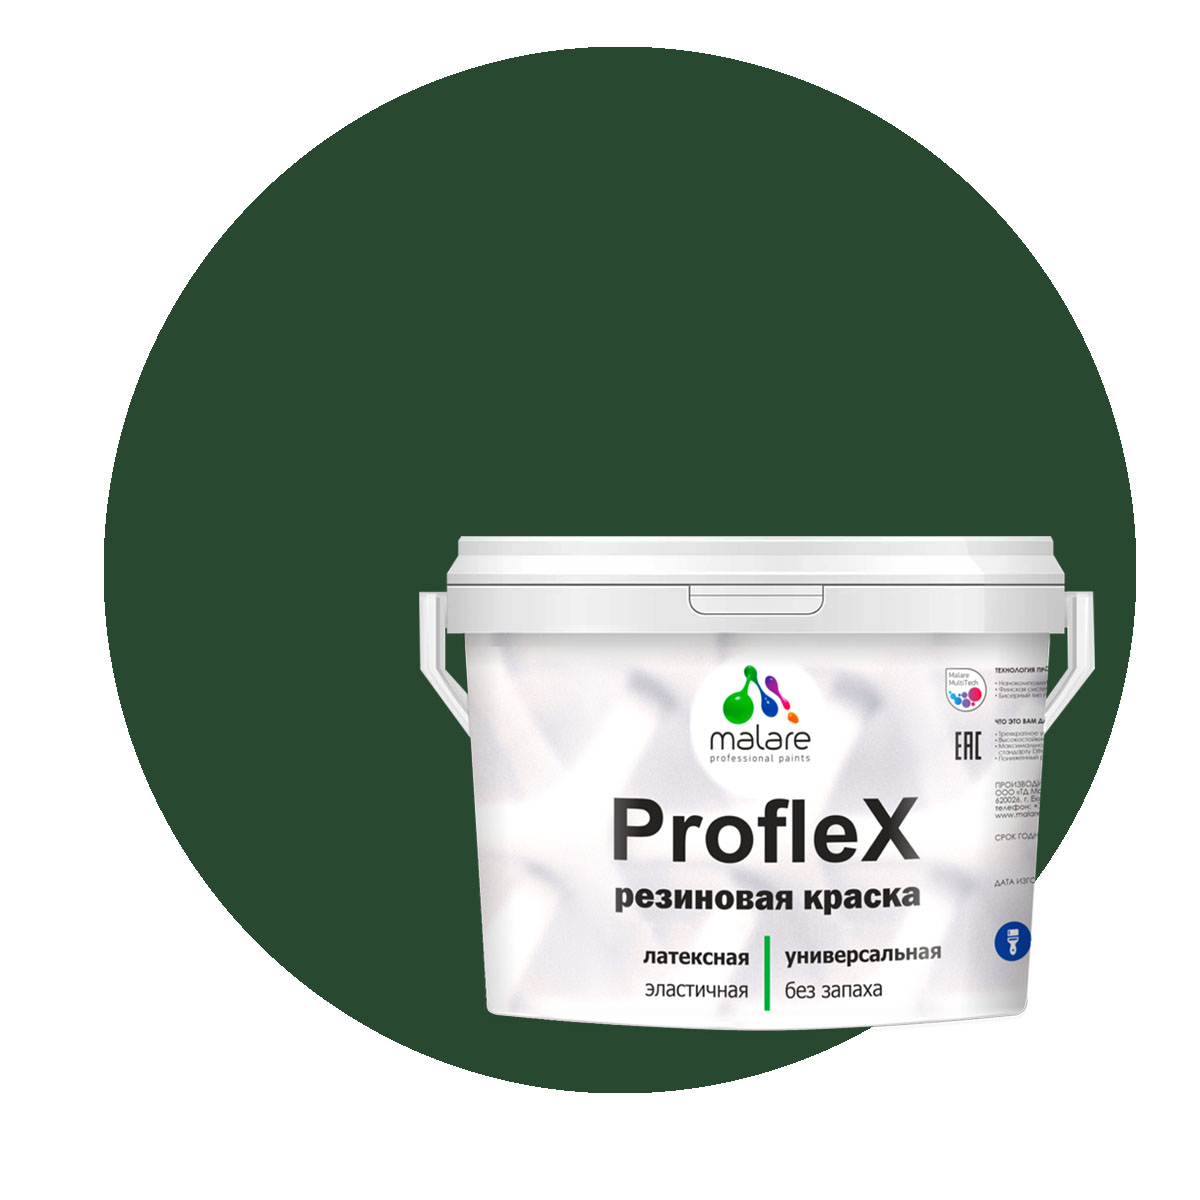 Краска Malare ProfleX для фасадов, интерьера, мебели, гавайский лес, 1 кг. щелочной очиститель фасадов зданий plex